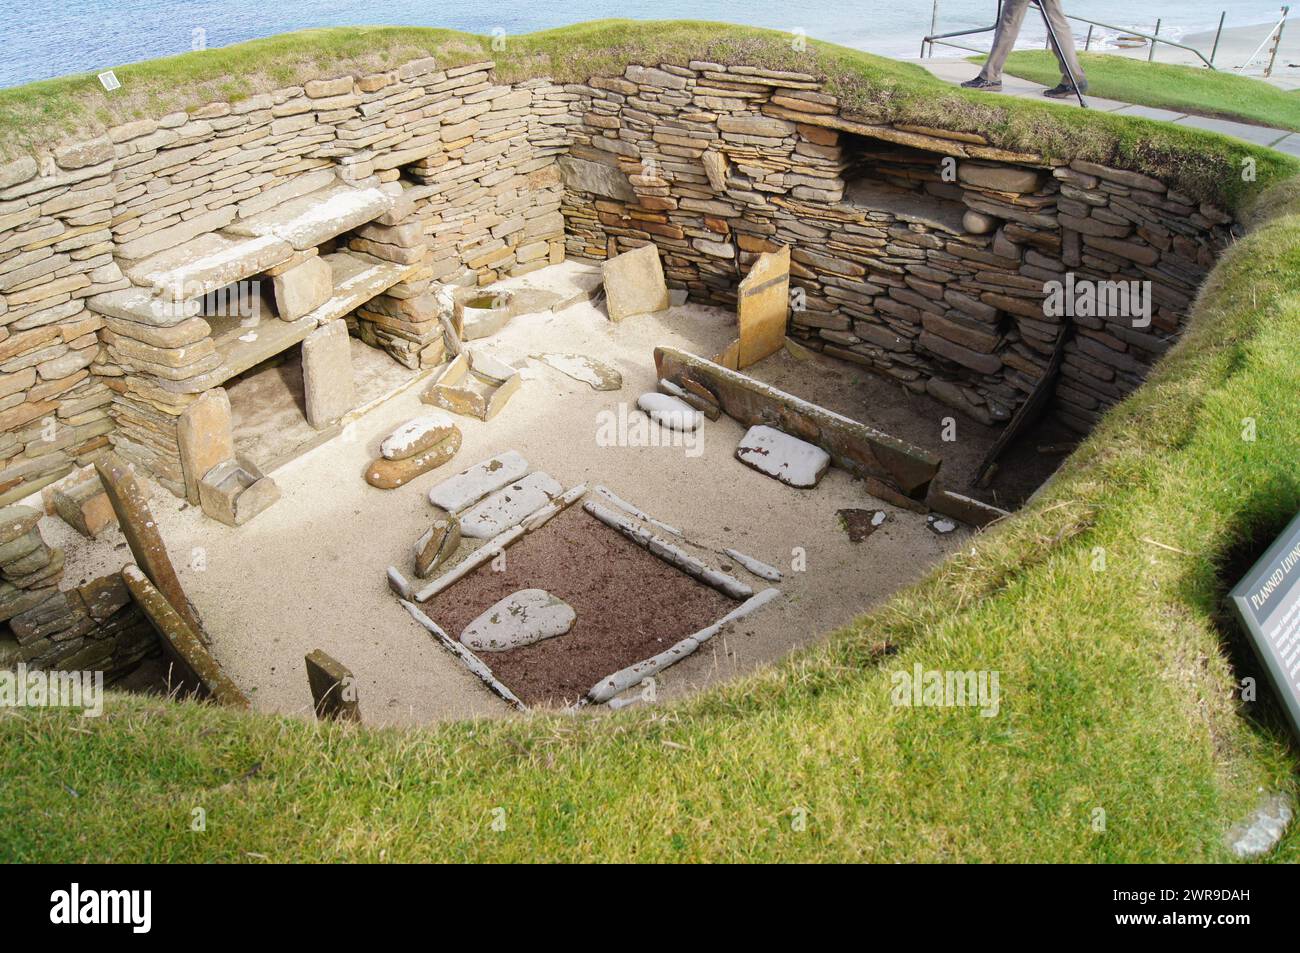 Insediamento neolitico costruito in pietra di Skara Brae, risalente a 5000 anni fa, situato nella baia di Skaill, nelle Orcadi, in Scozia Foto Stock